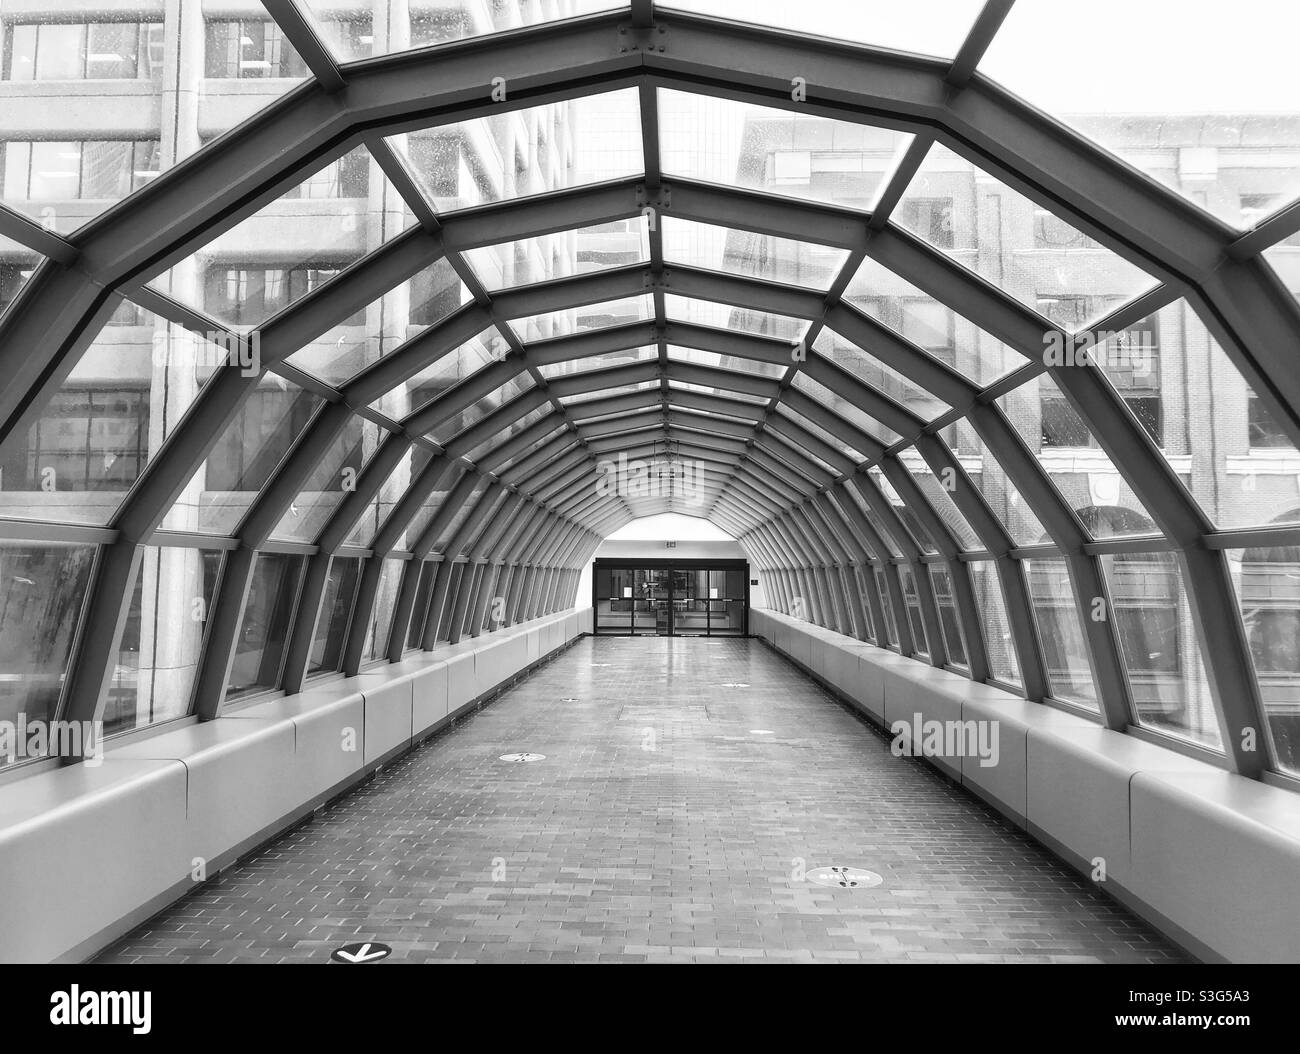 Le système de passerelle Plus15 dans le centre-ville de Calgary, Alberta, Canada, comme un tunnel traversant une toile d'araignée entre les édifices du centre-ville de la ville. Banque D'Images